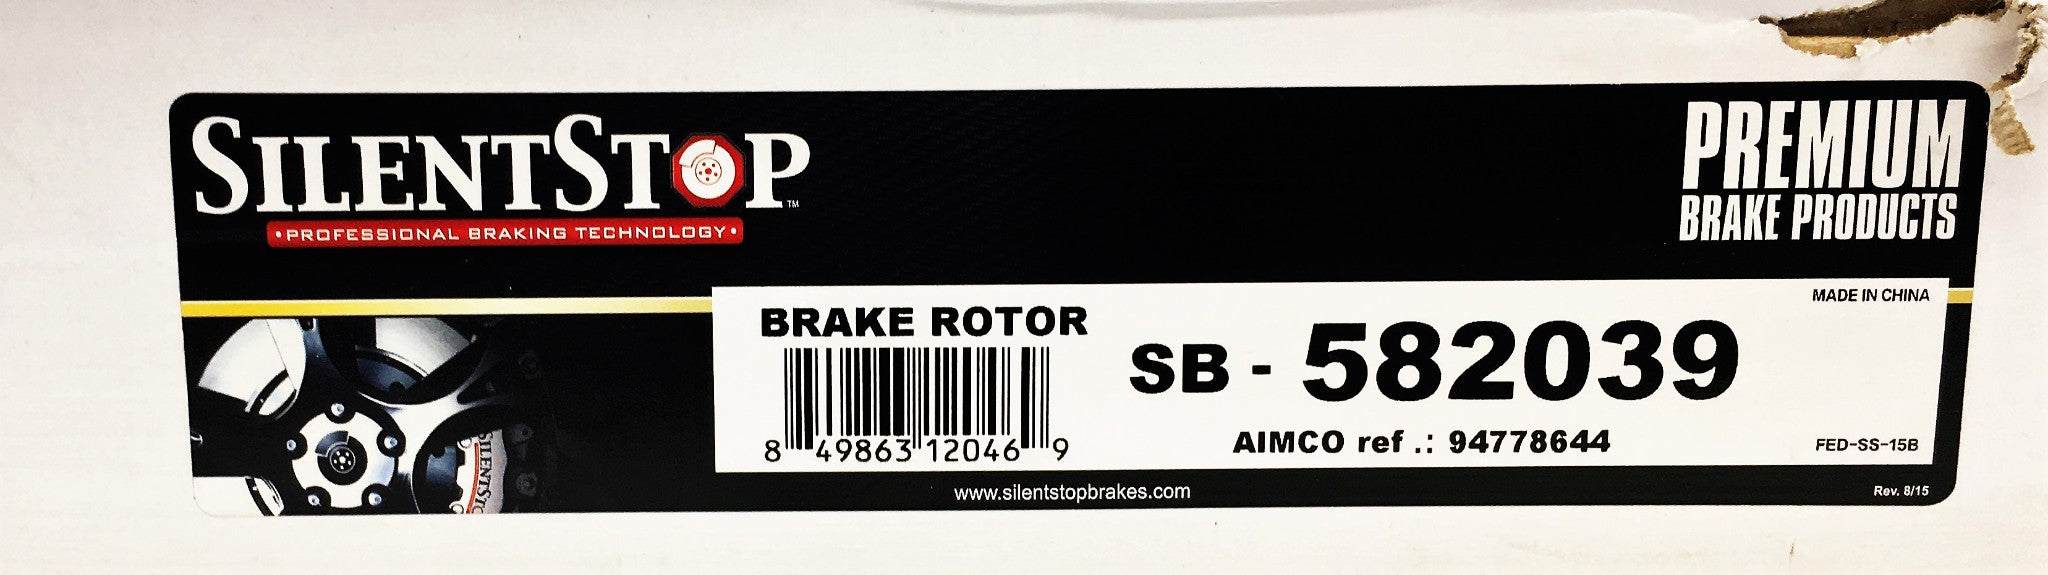 SilentStop Brake Rotor SB-582039 NOS